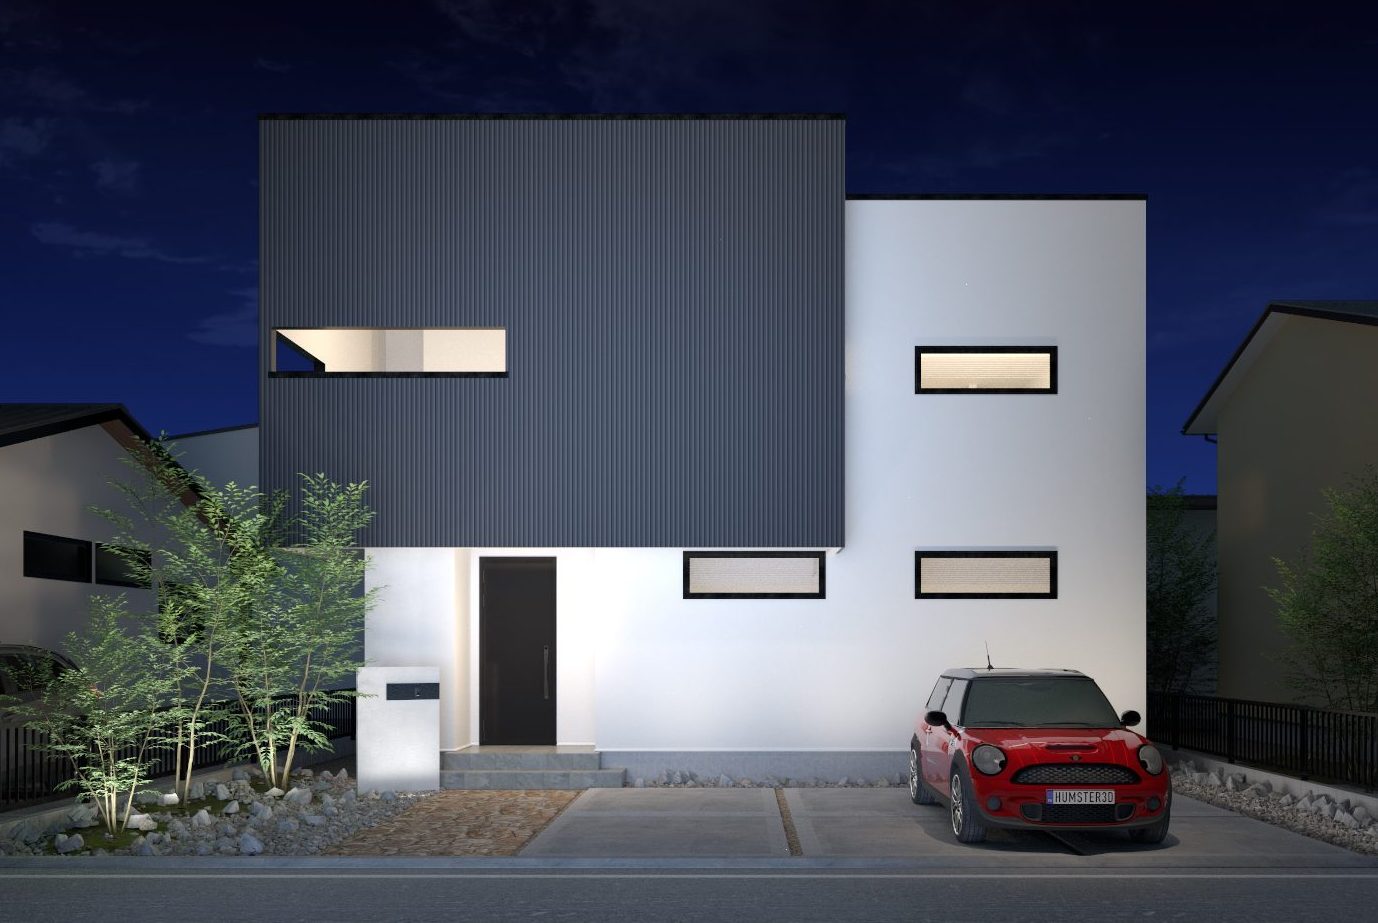 【三木末広モデルハウス】普通の家と自然素材の家の違いを体感できる家